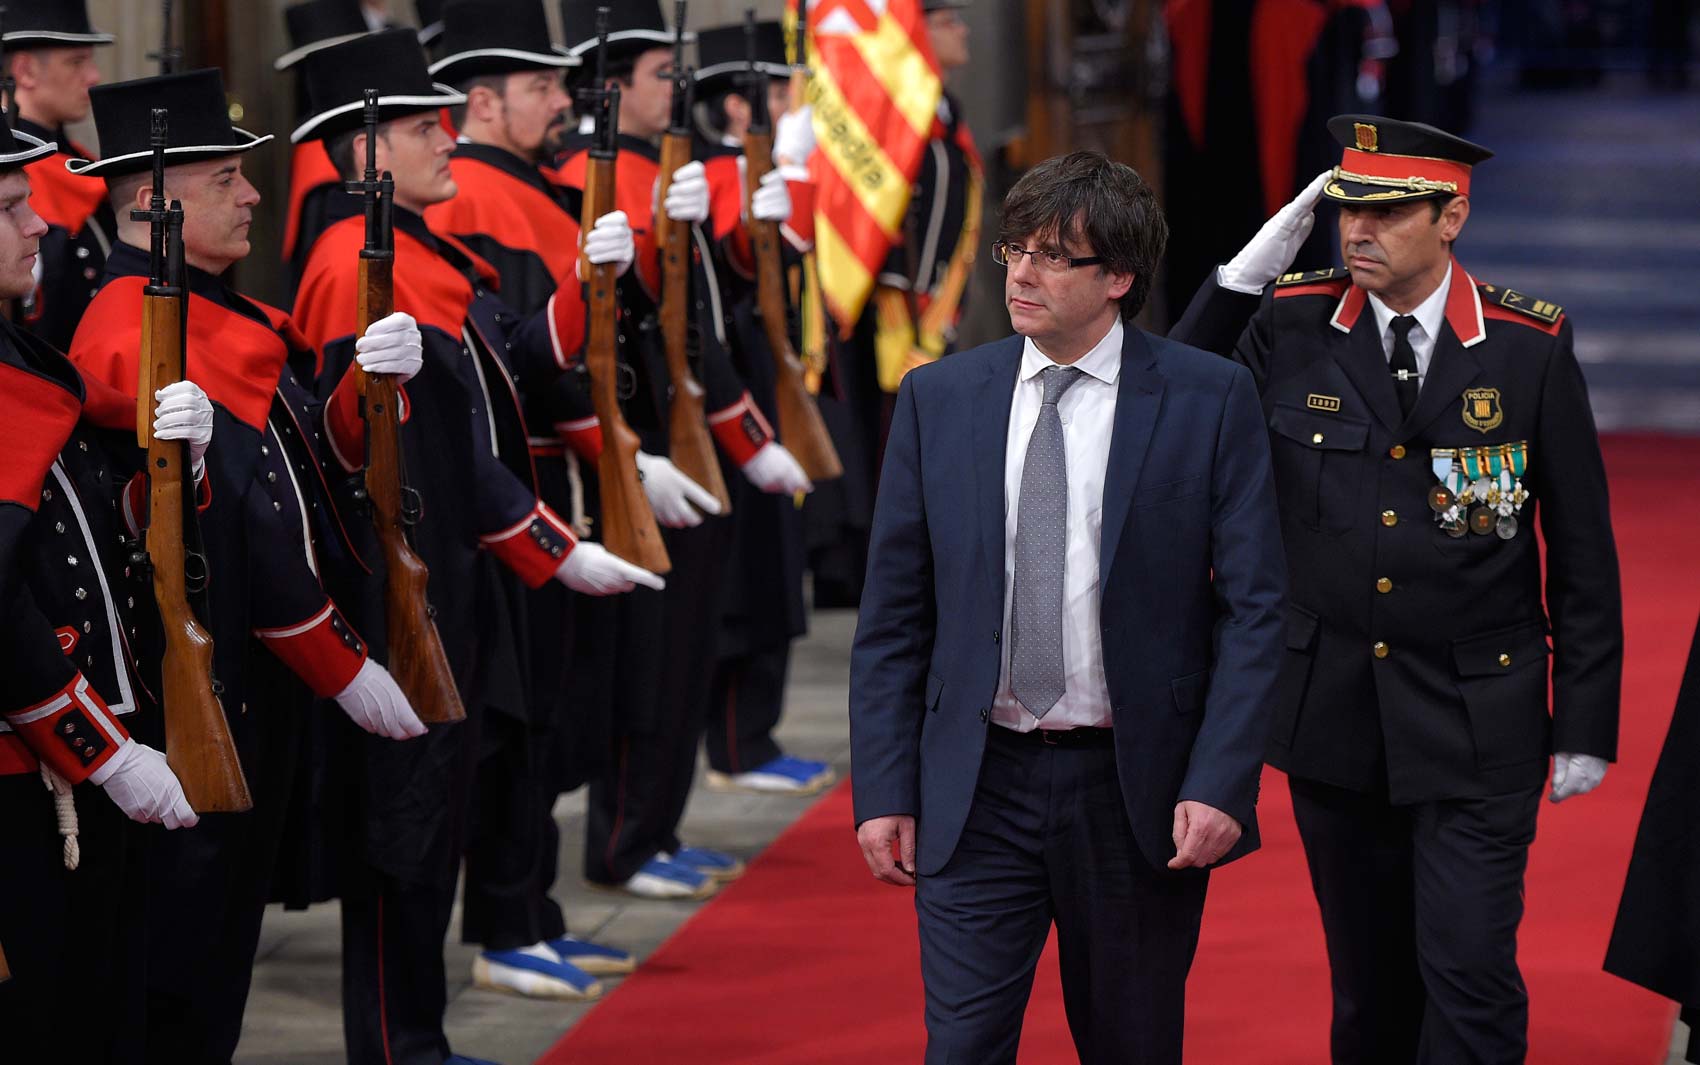 O separatista Carles Puigdemont chea ao Palácio da presidência da Catalunha nesta terça-feira (12) em Barcelona, para posse como presidente da região (Foto: LLUIS GENE / AFP)